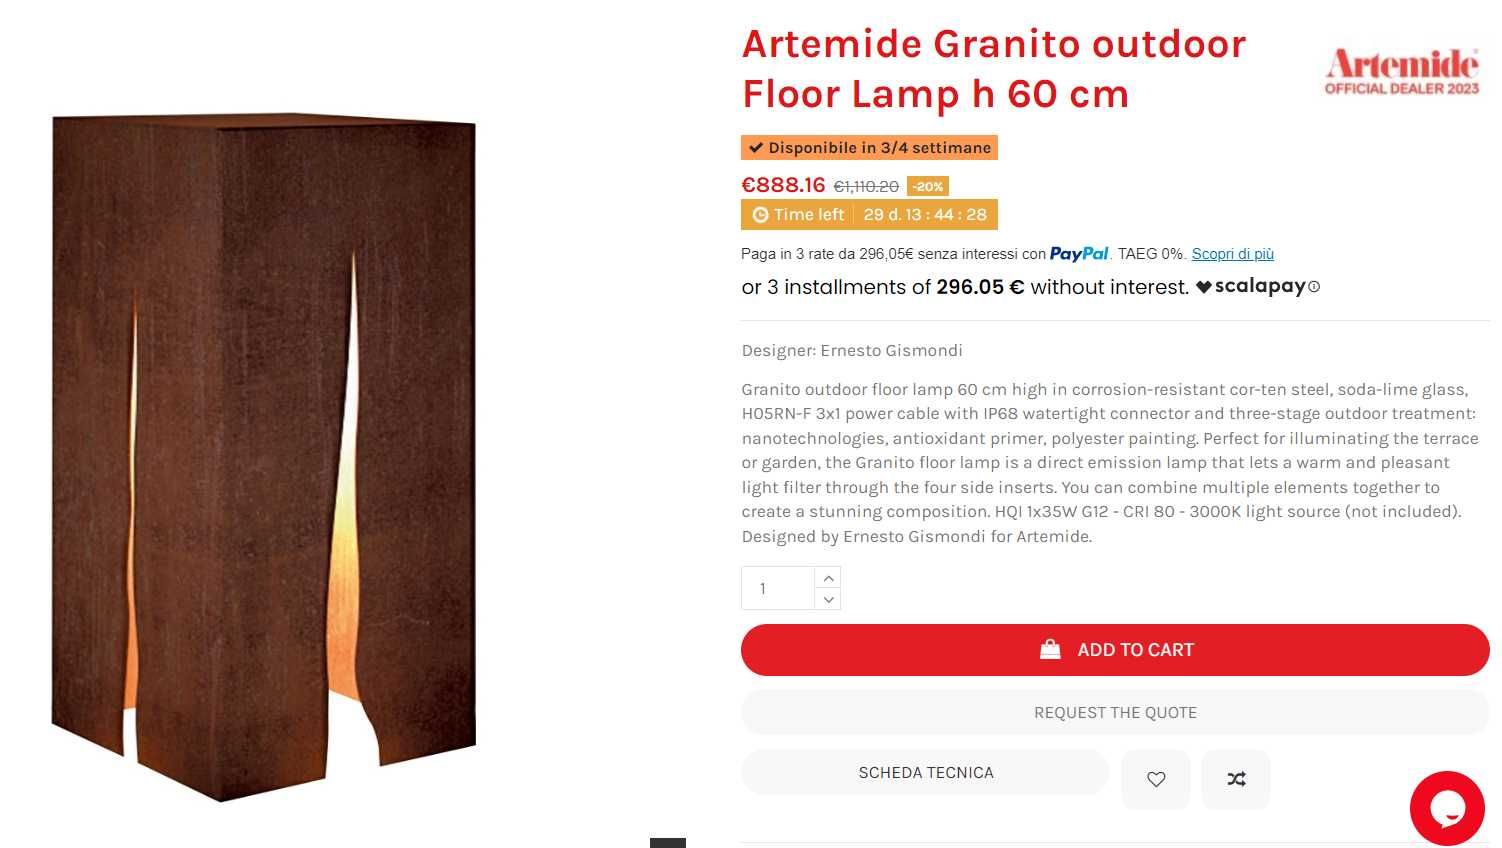 Lampa Artemide Granito 60